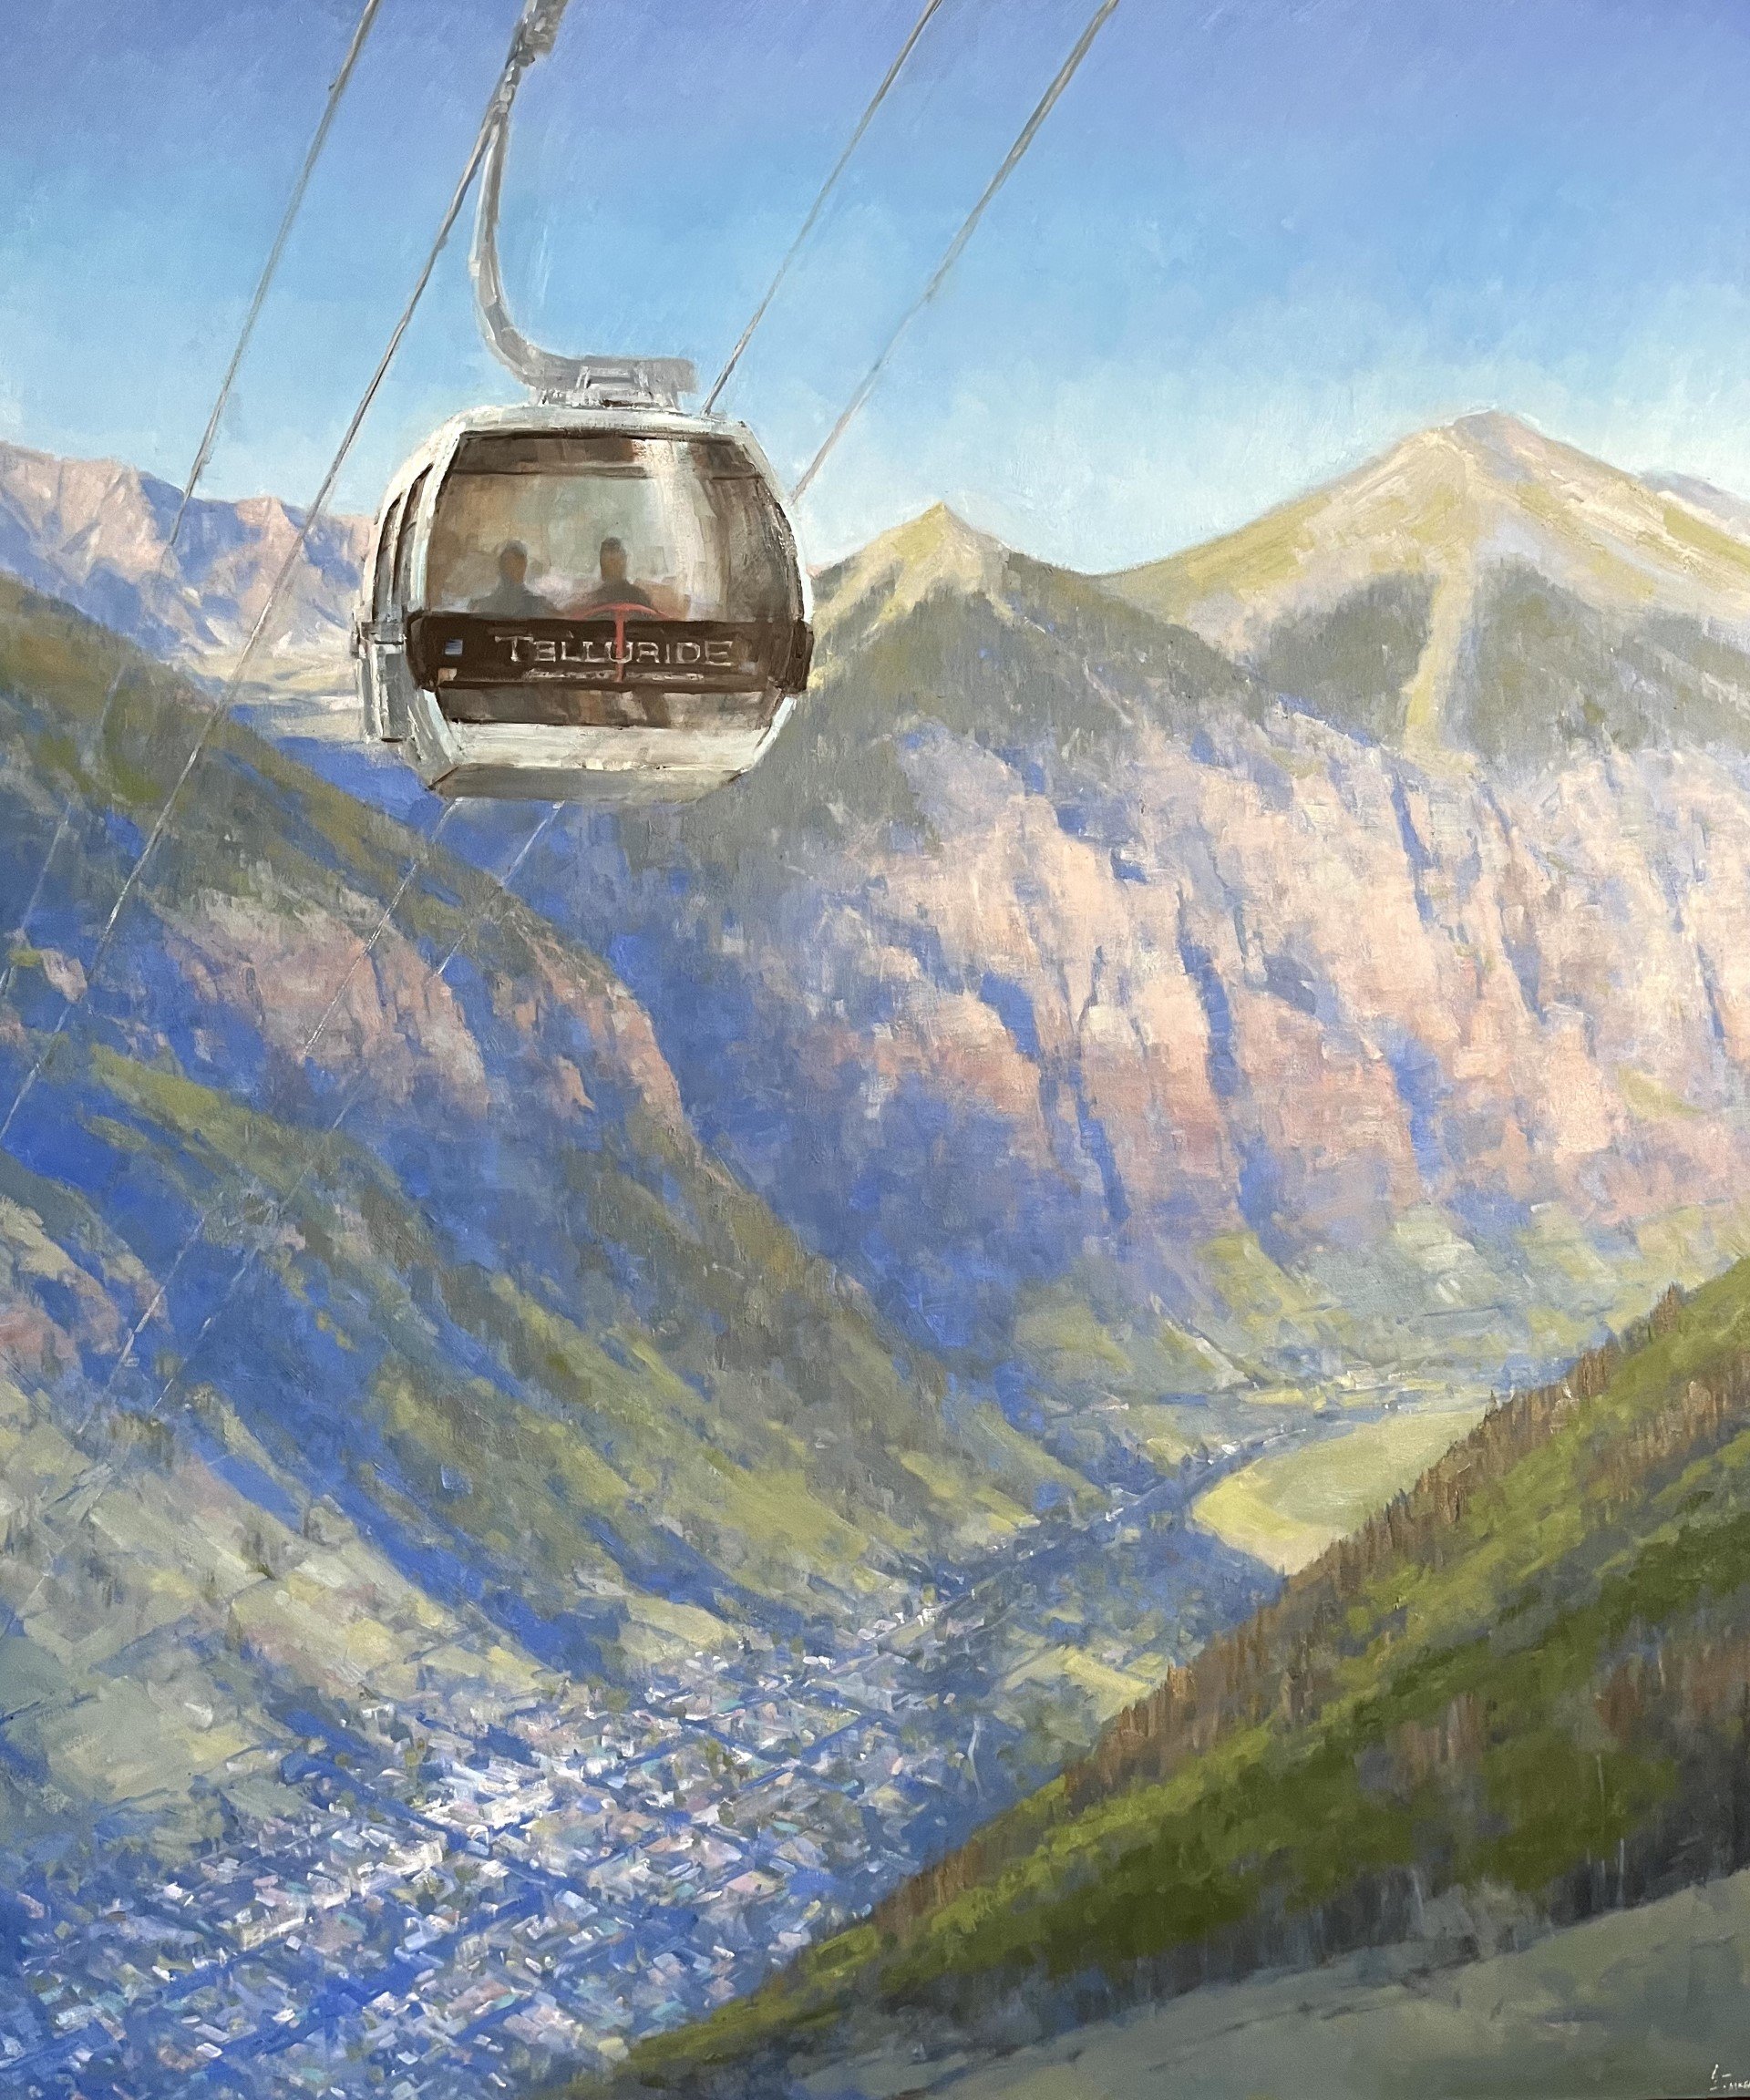  “Gondola View” 48x60, Oil on Canvas. 